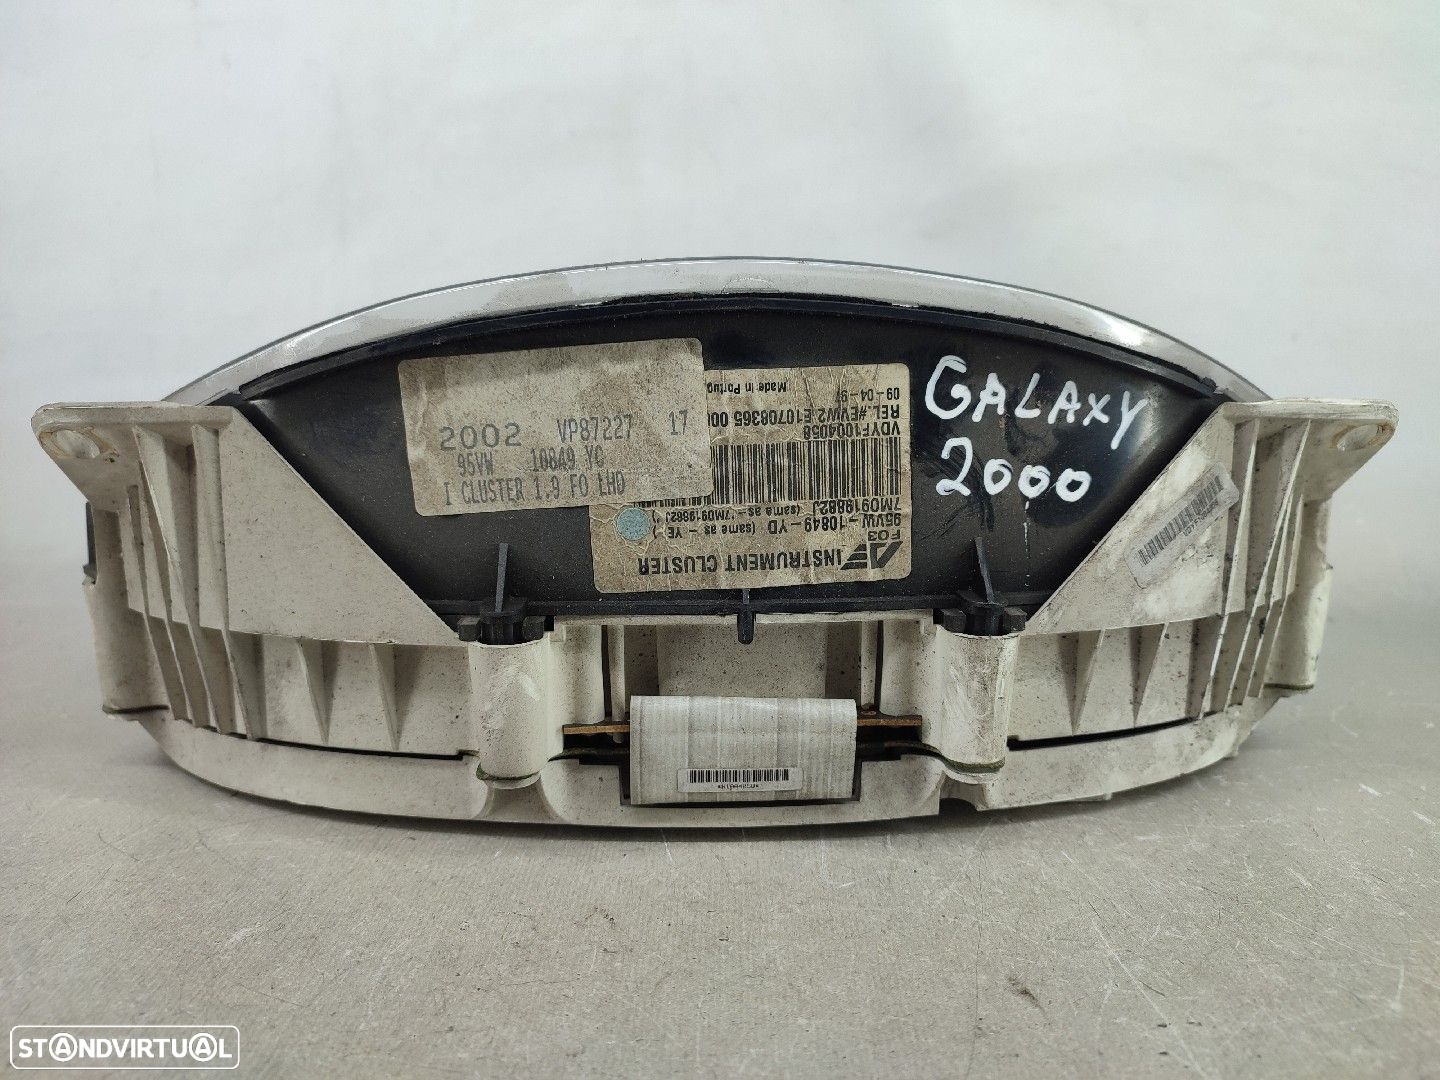 Quadrante Ford Galaxy (Wgr) - 2